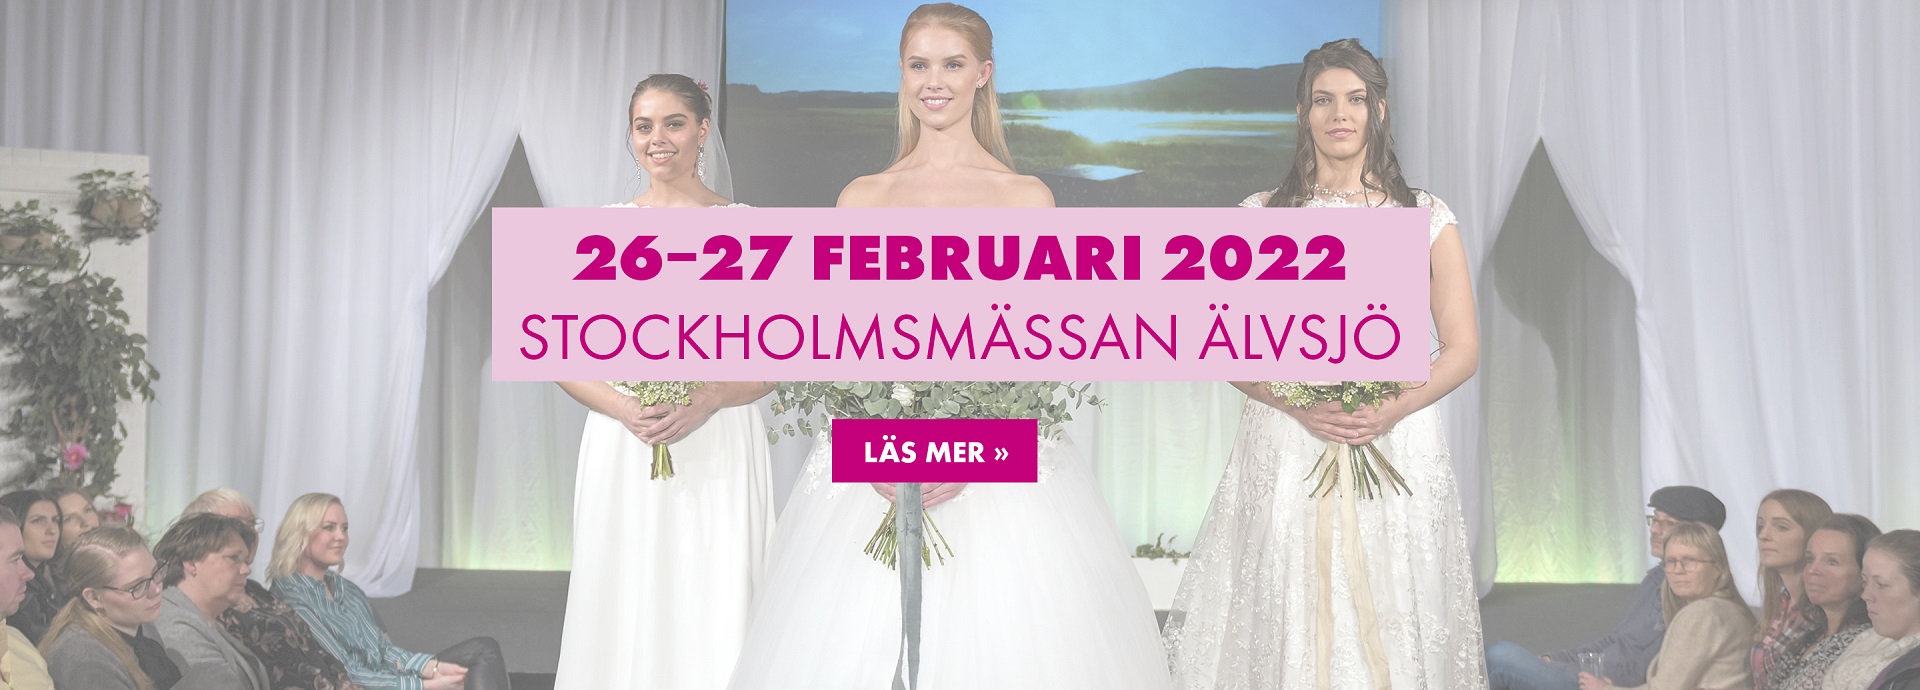 Bröllopsmässa Stockholm